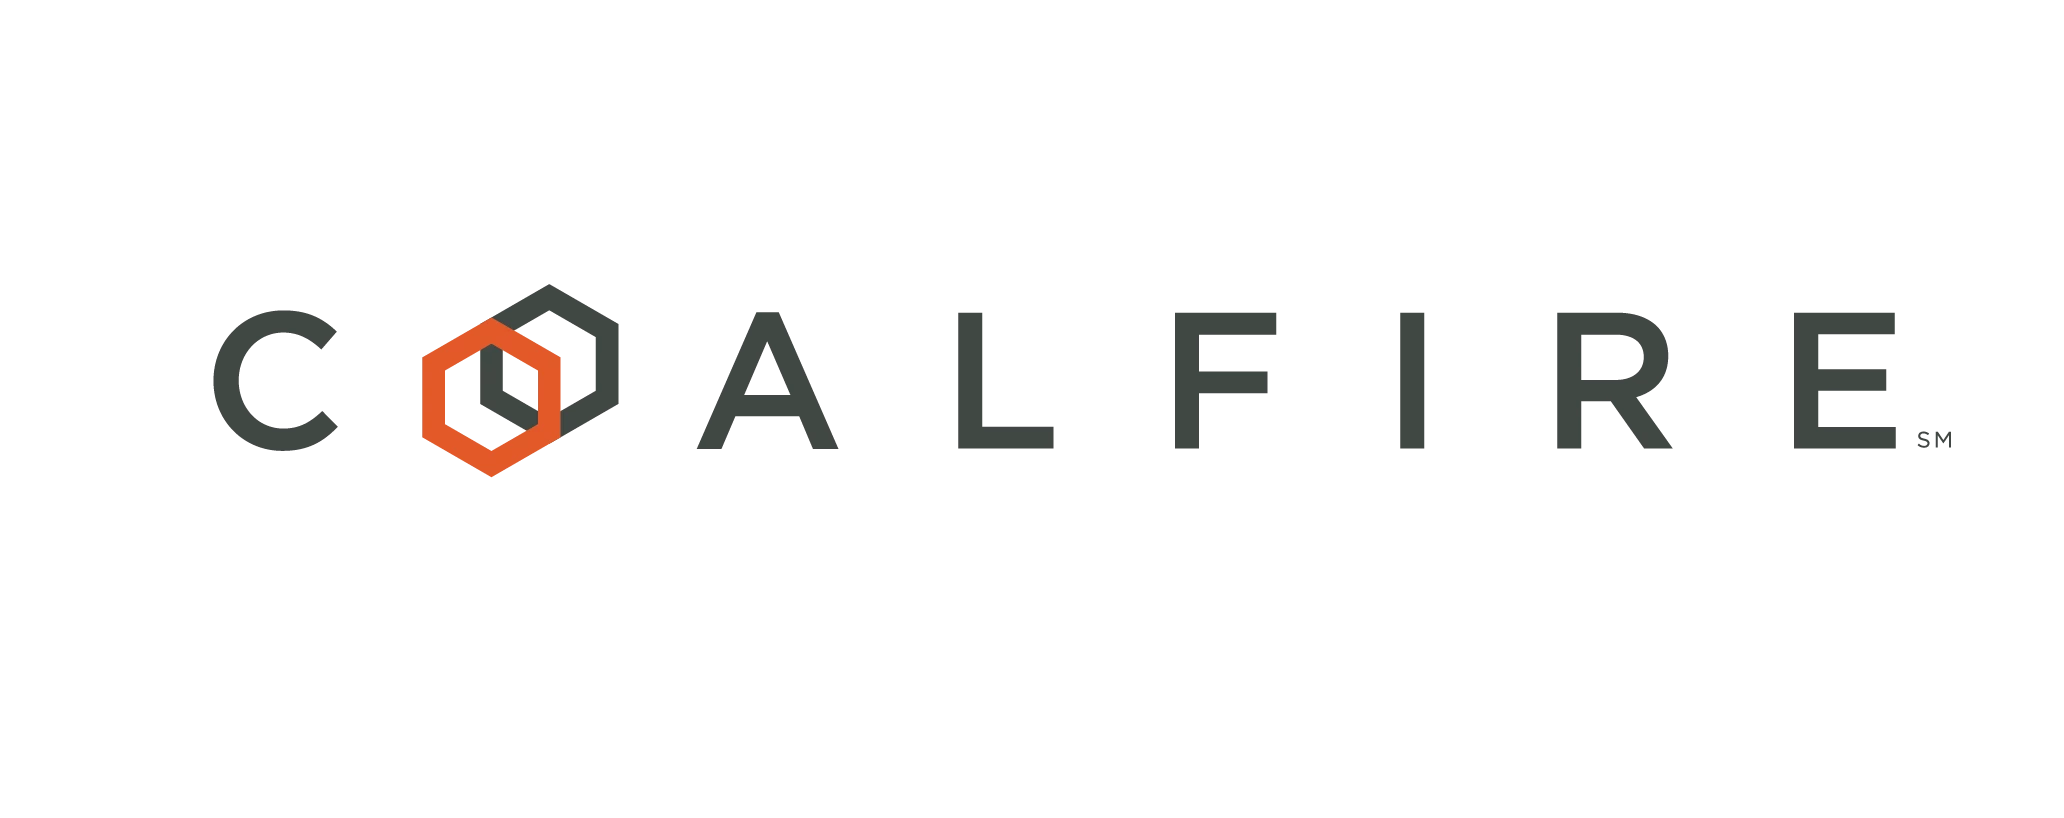 Coalfire logo 